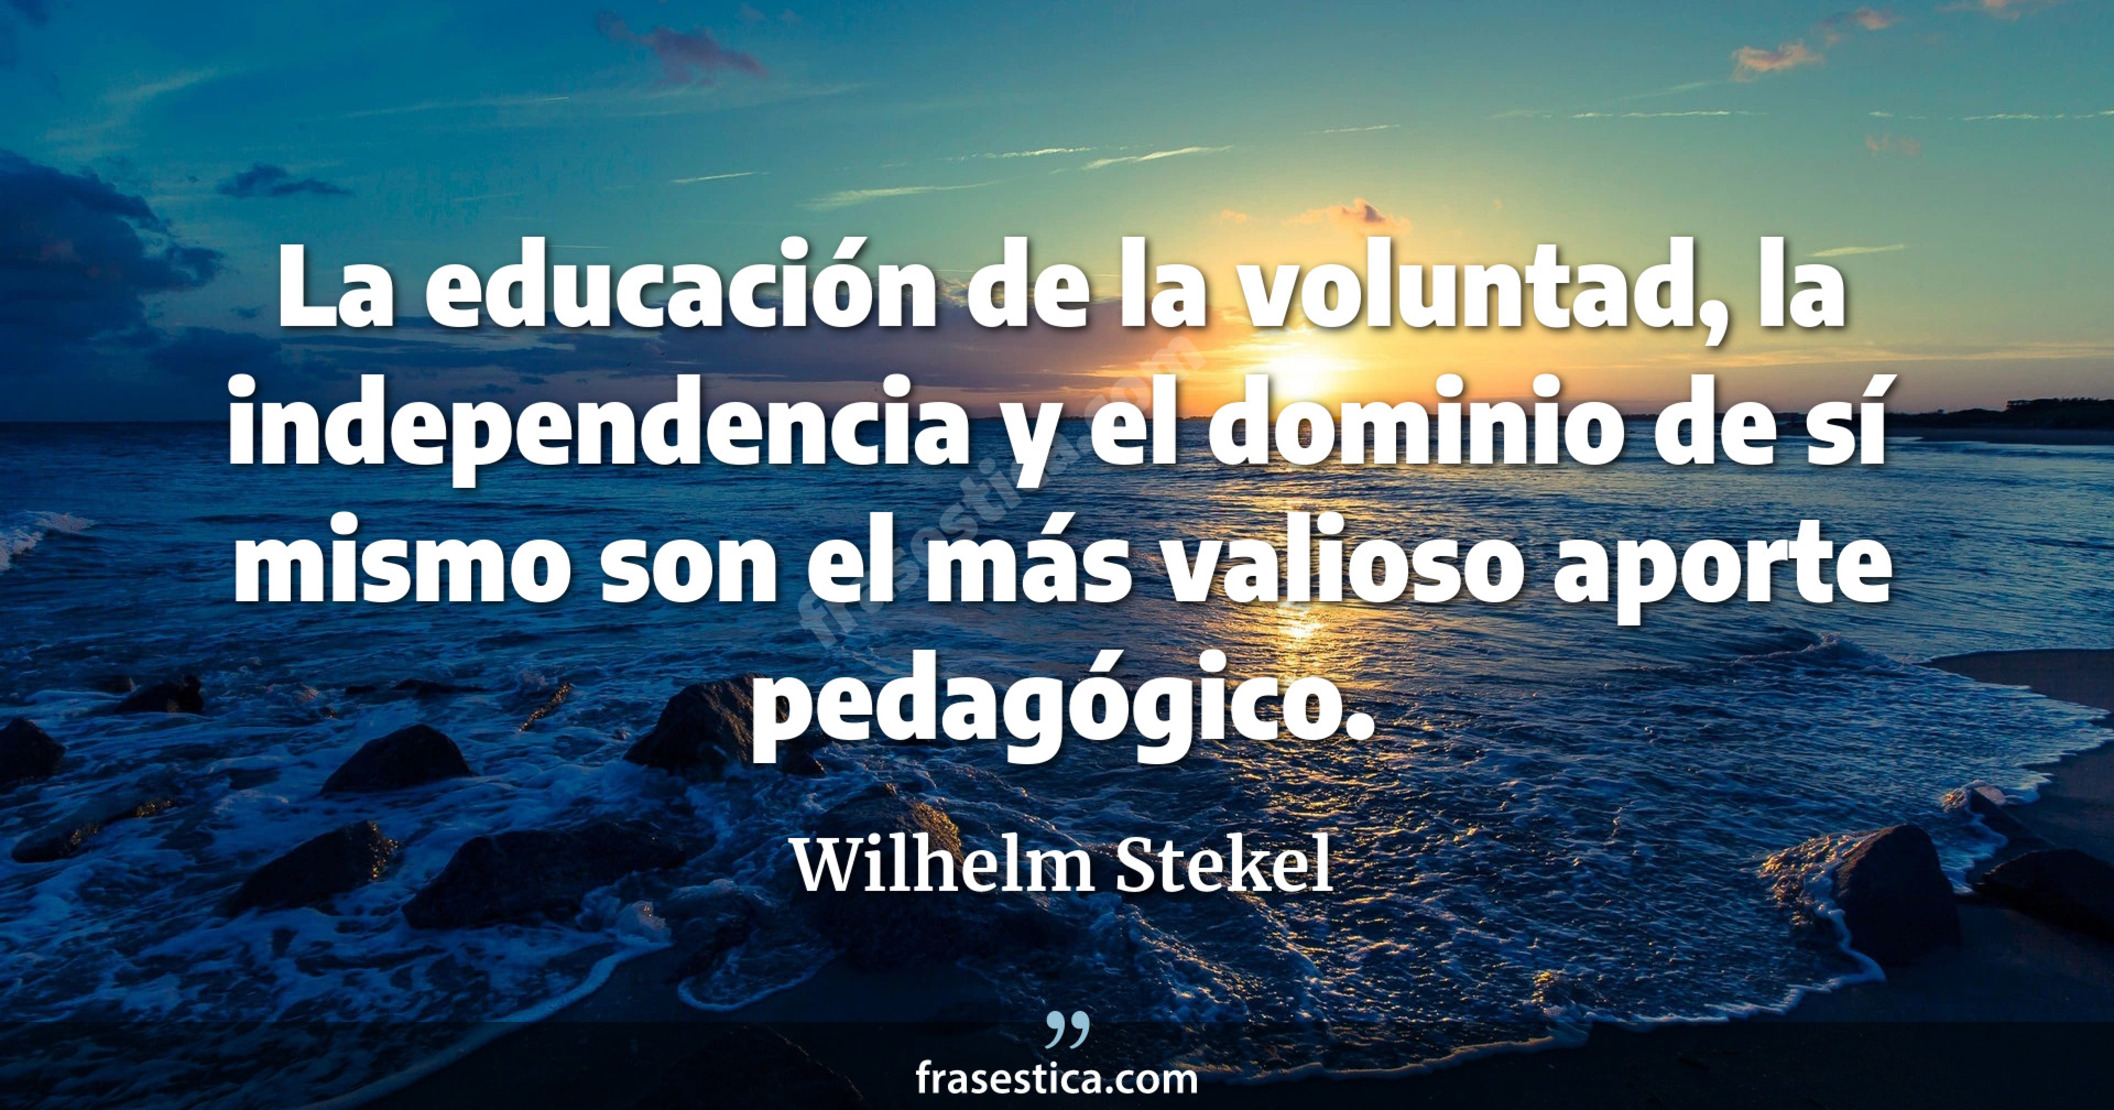 La educación de la voluntad, la independencia y el dominio de sí mismo son el más valioso aporte pedagógico. - Wilhelm Stekel